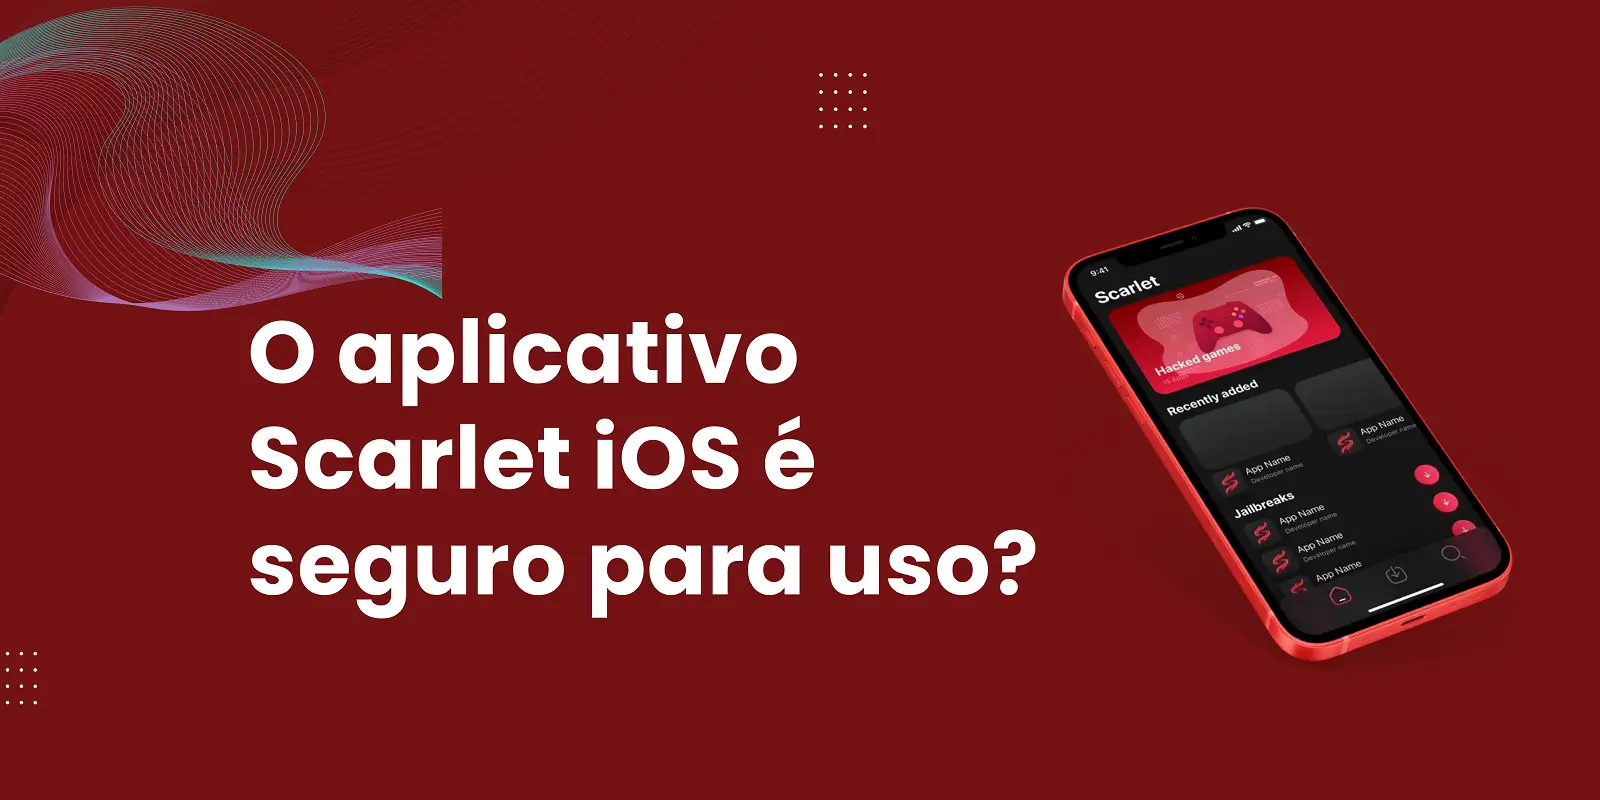 O aplicativo Scarlet iOS é seguro para uso? Ler informações